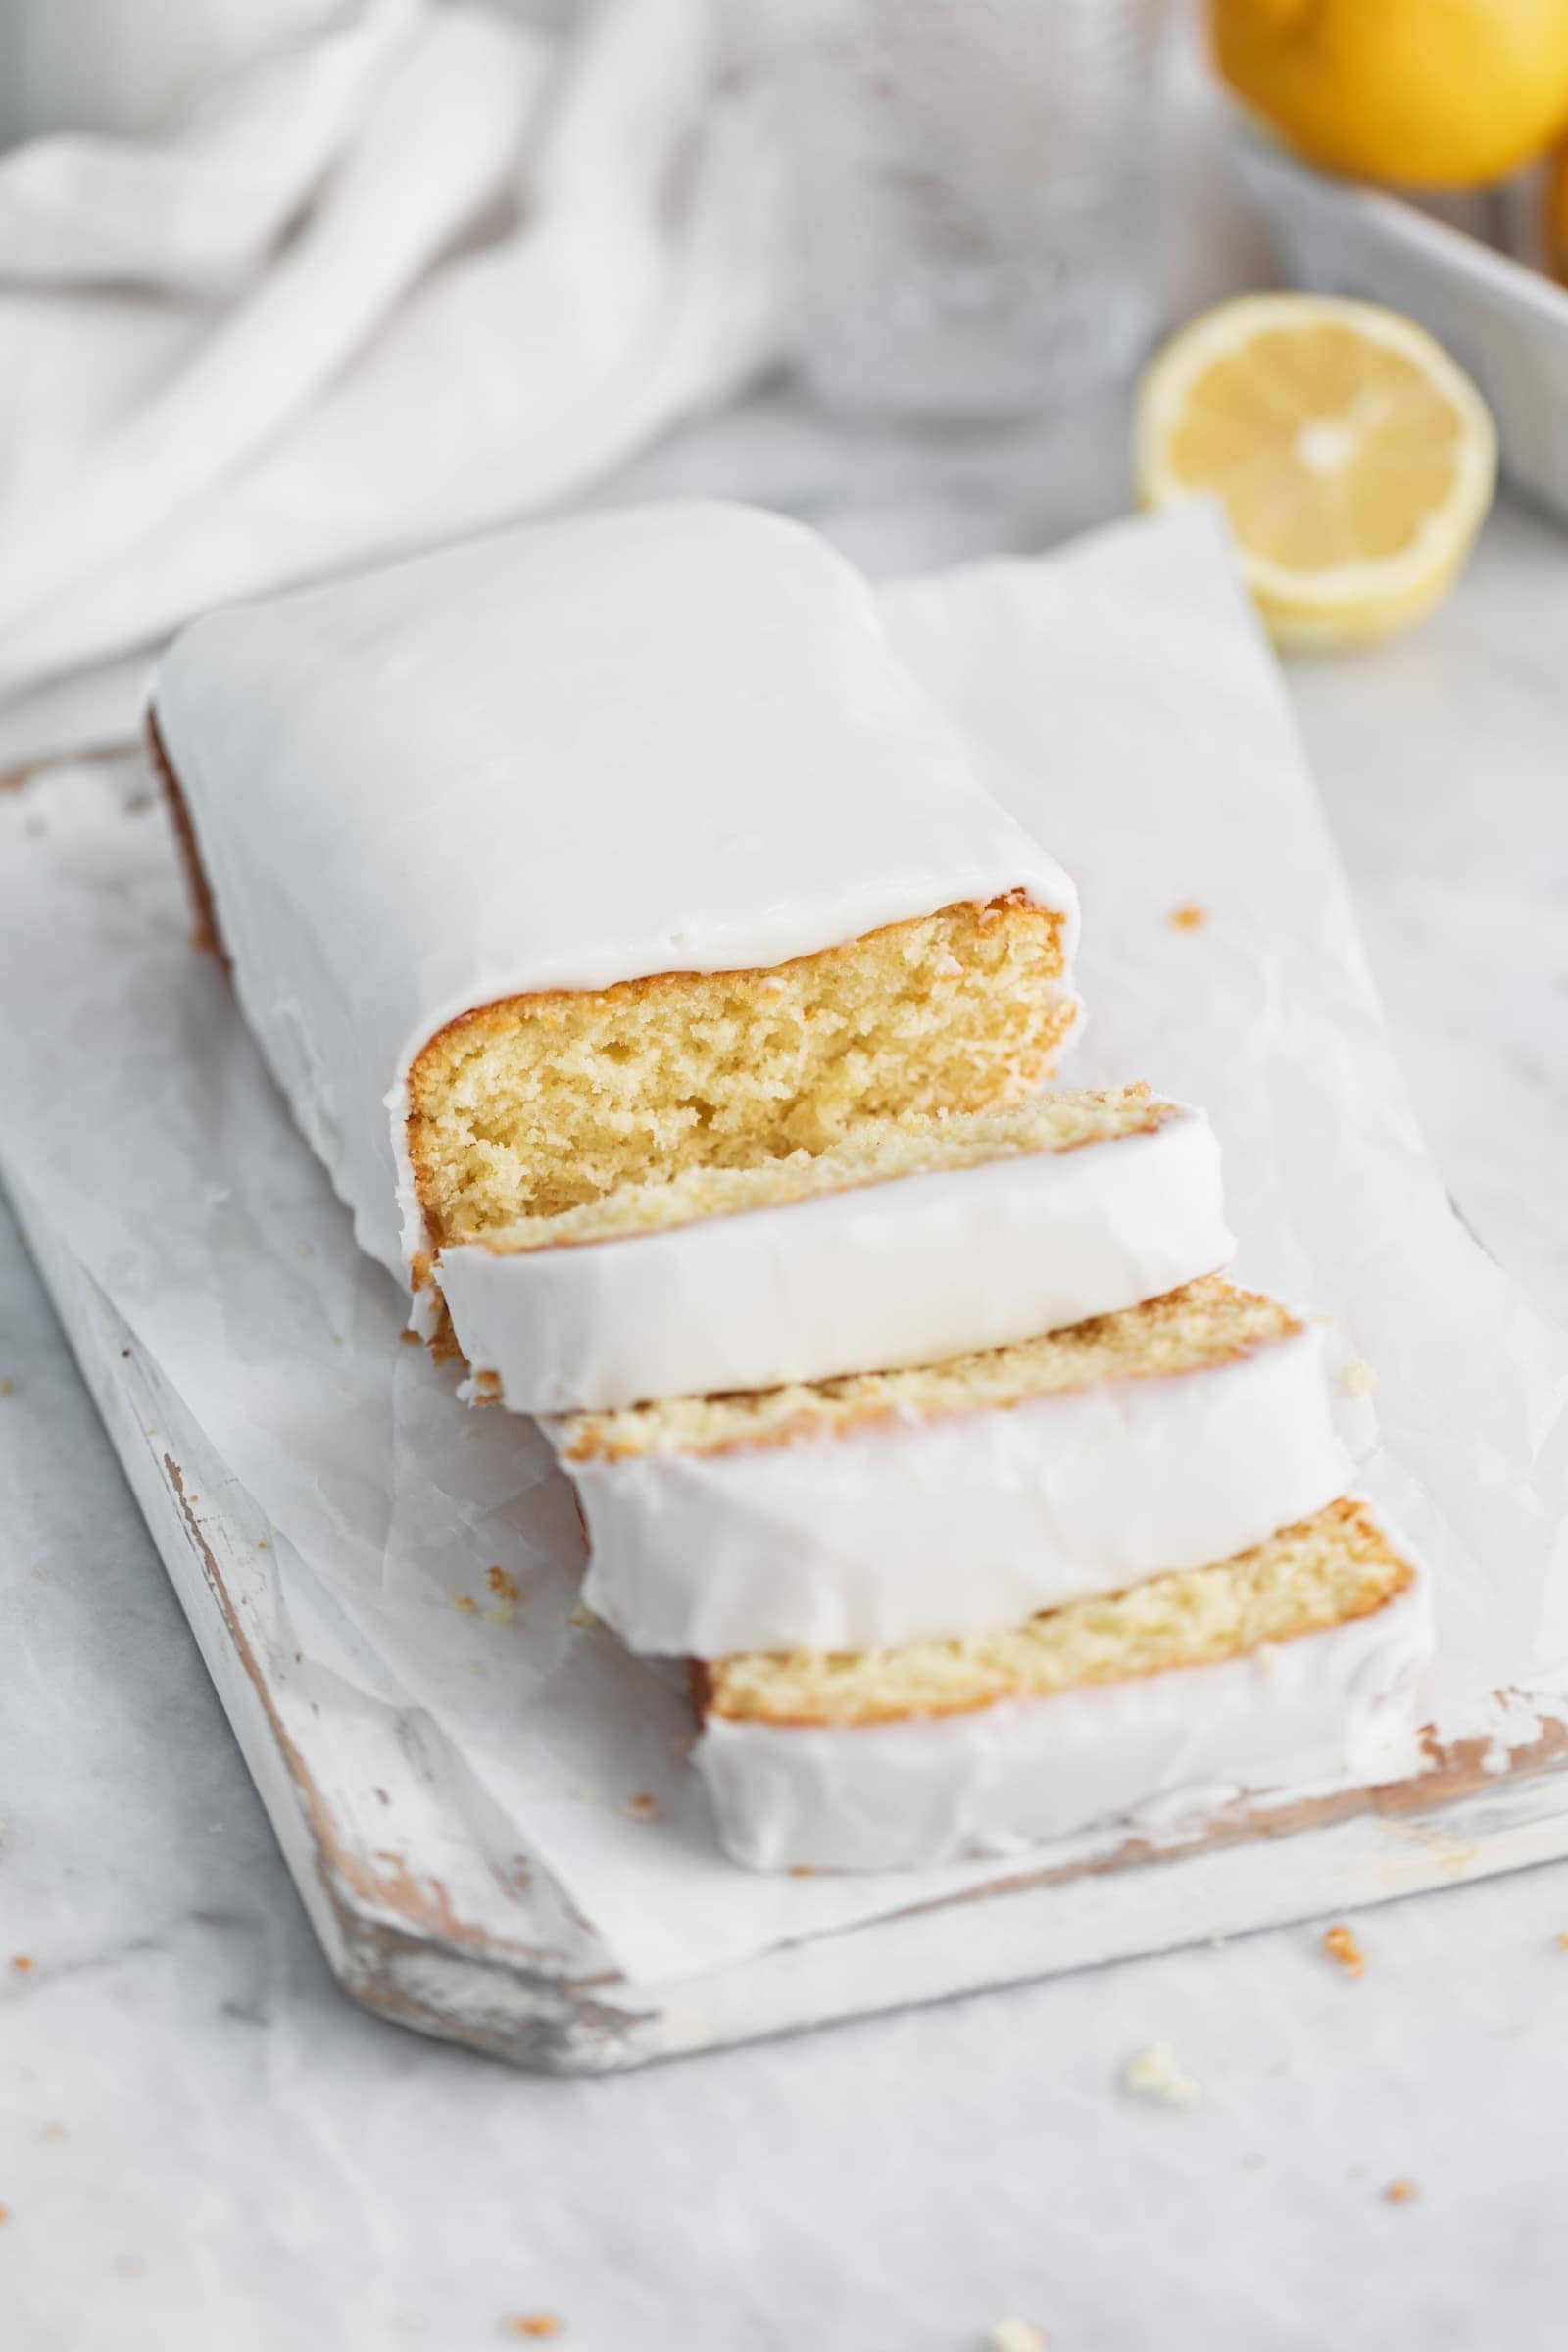 Details more than 123 lemon loaf cake latest